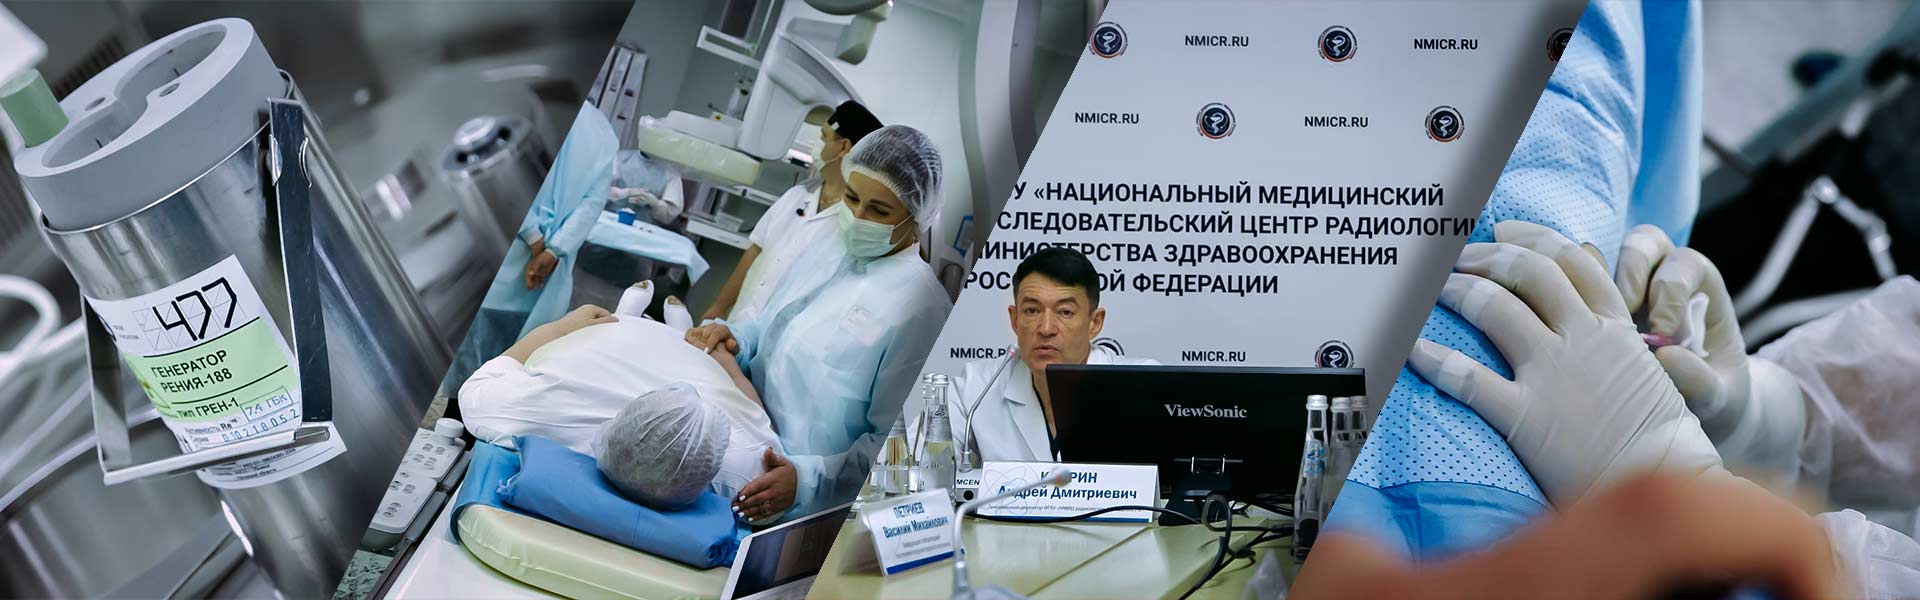 Будущее ядерной медицины: российские медики вводят в клиническую практику применение Рения – 188